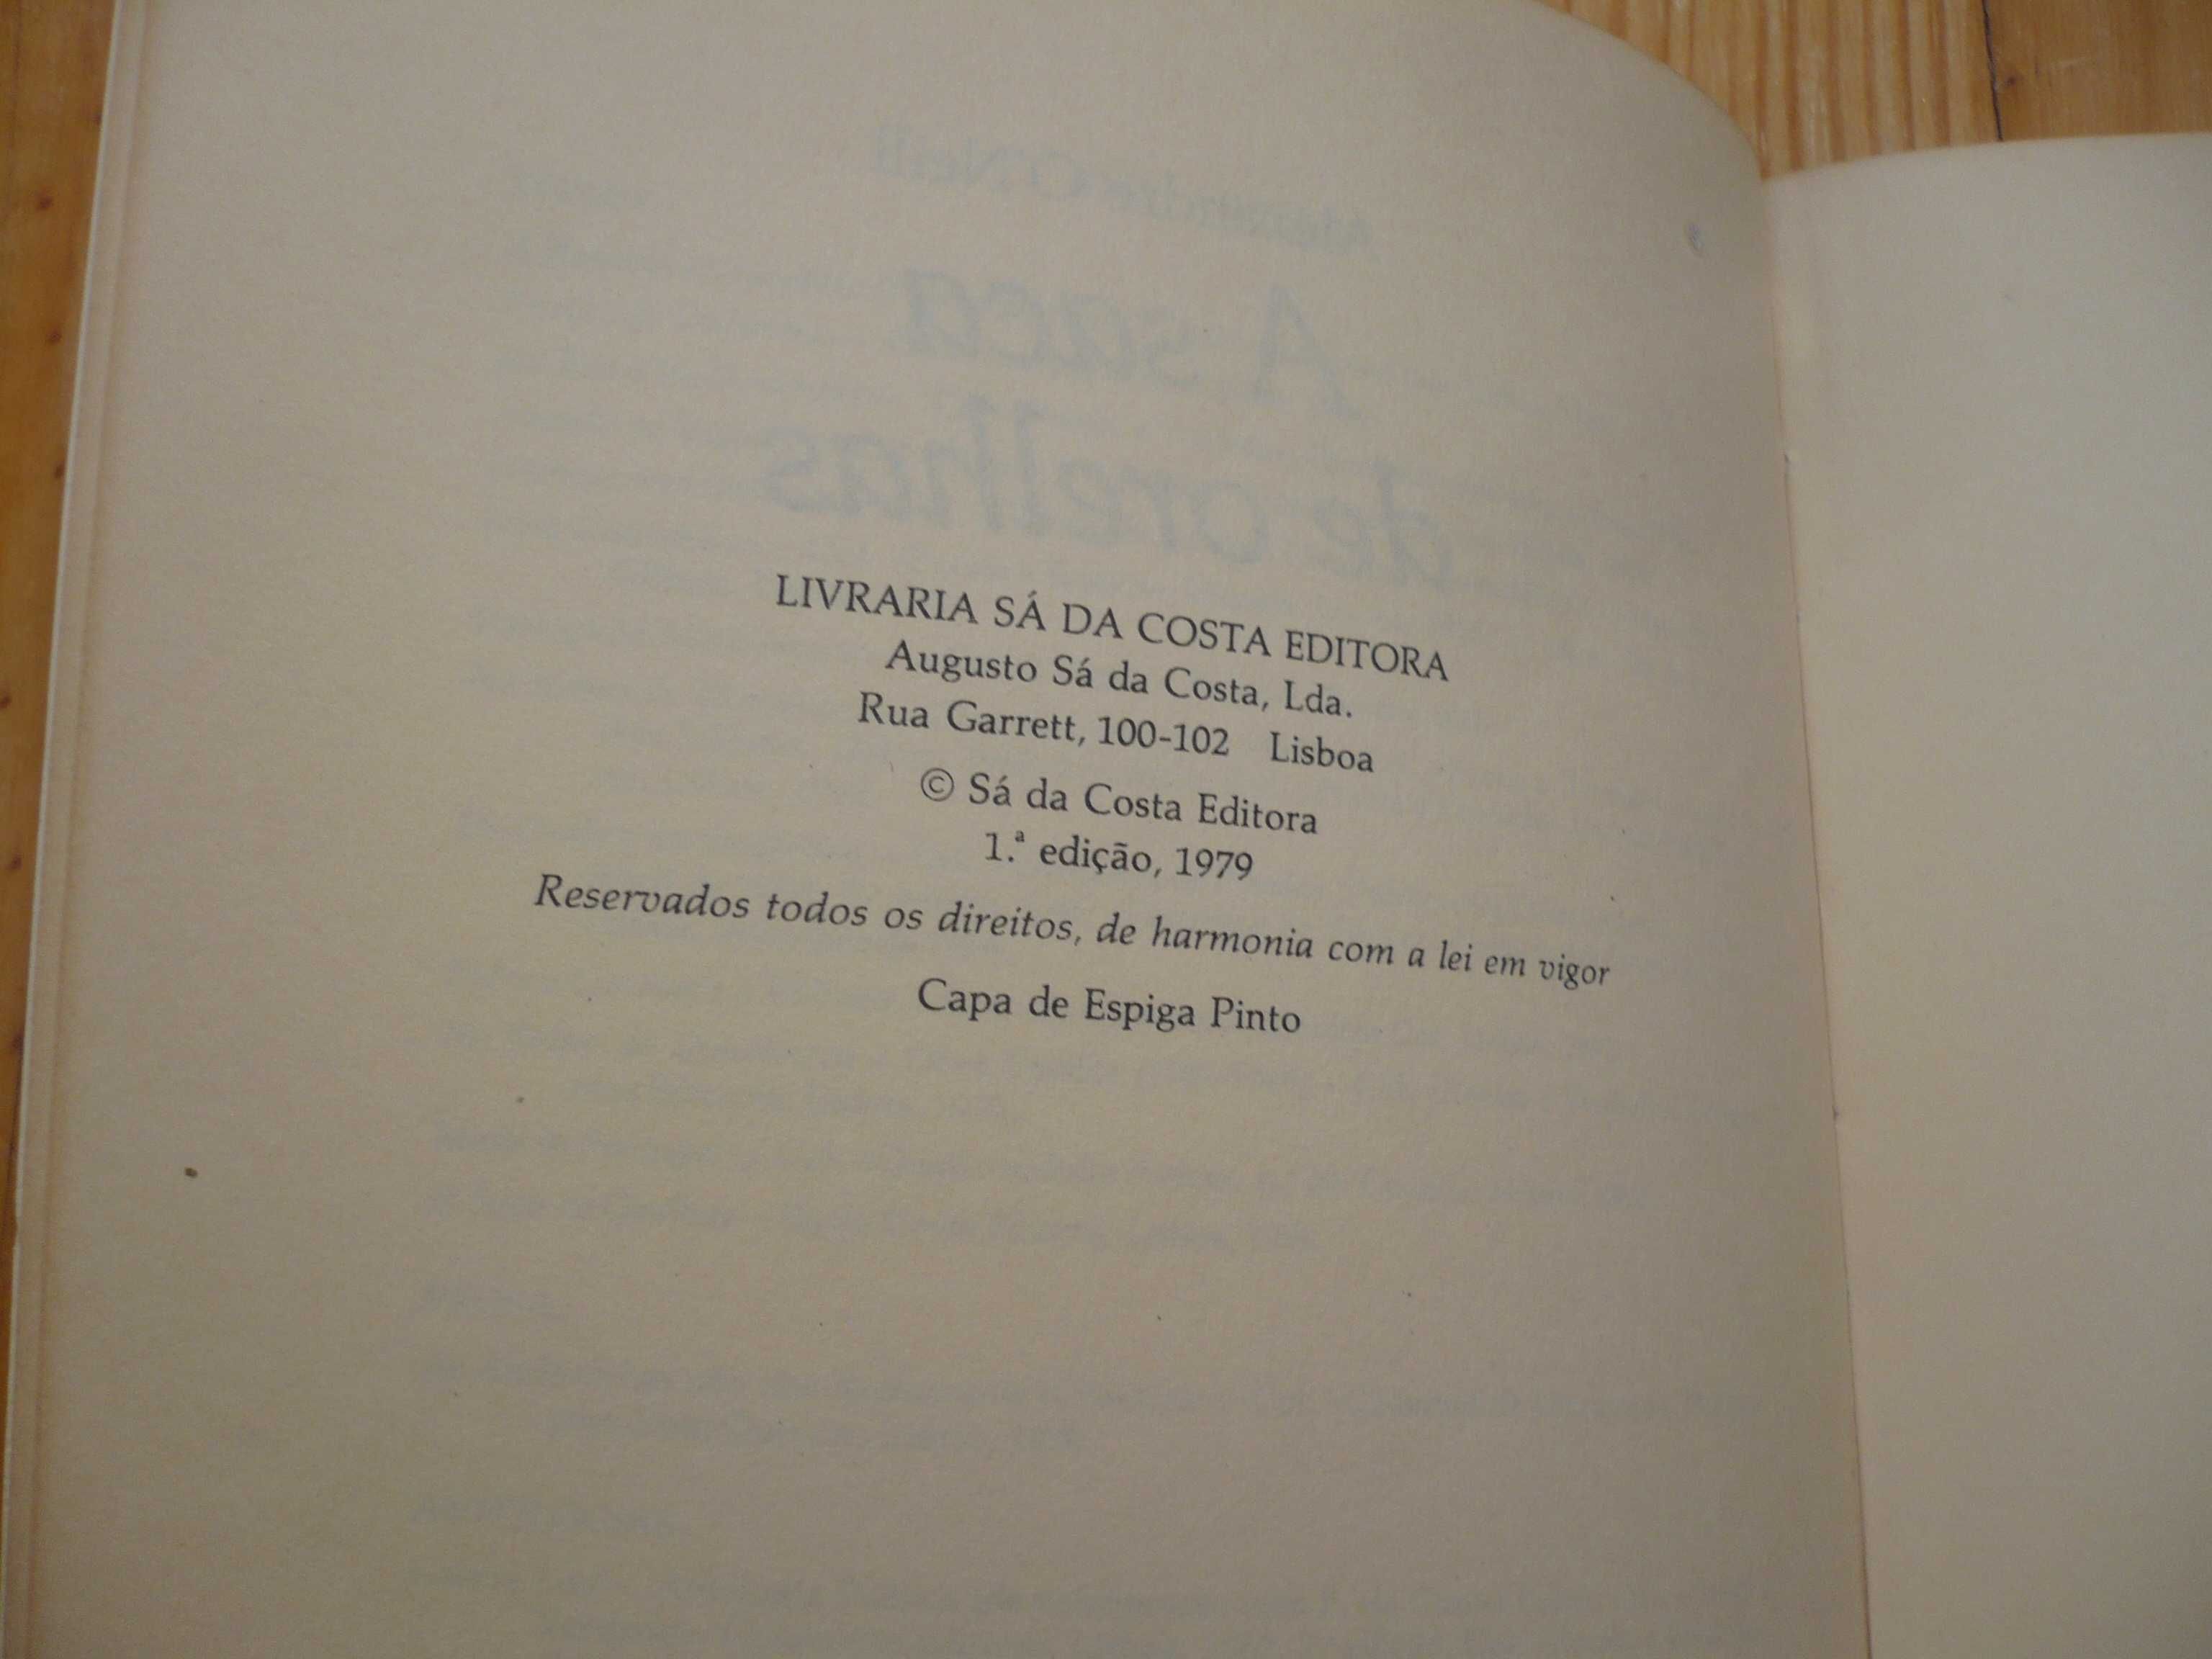 Alexandre O'Neill - A Saca de Orelhas - 1ª edição.